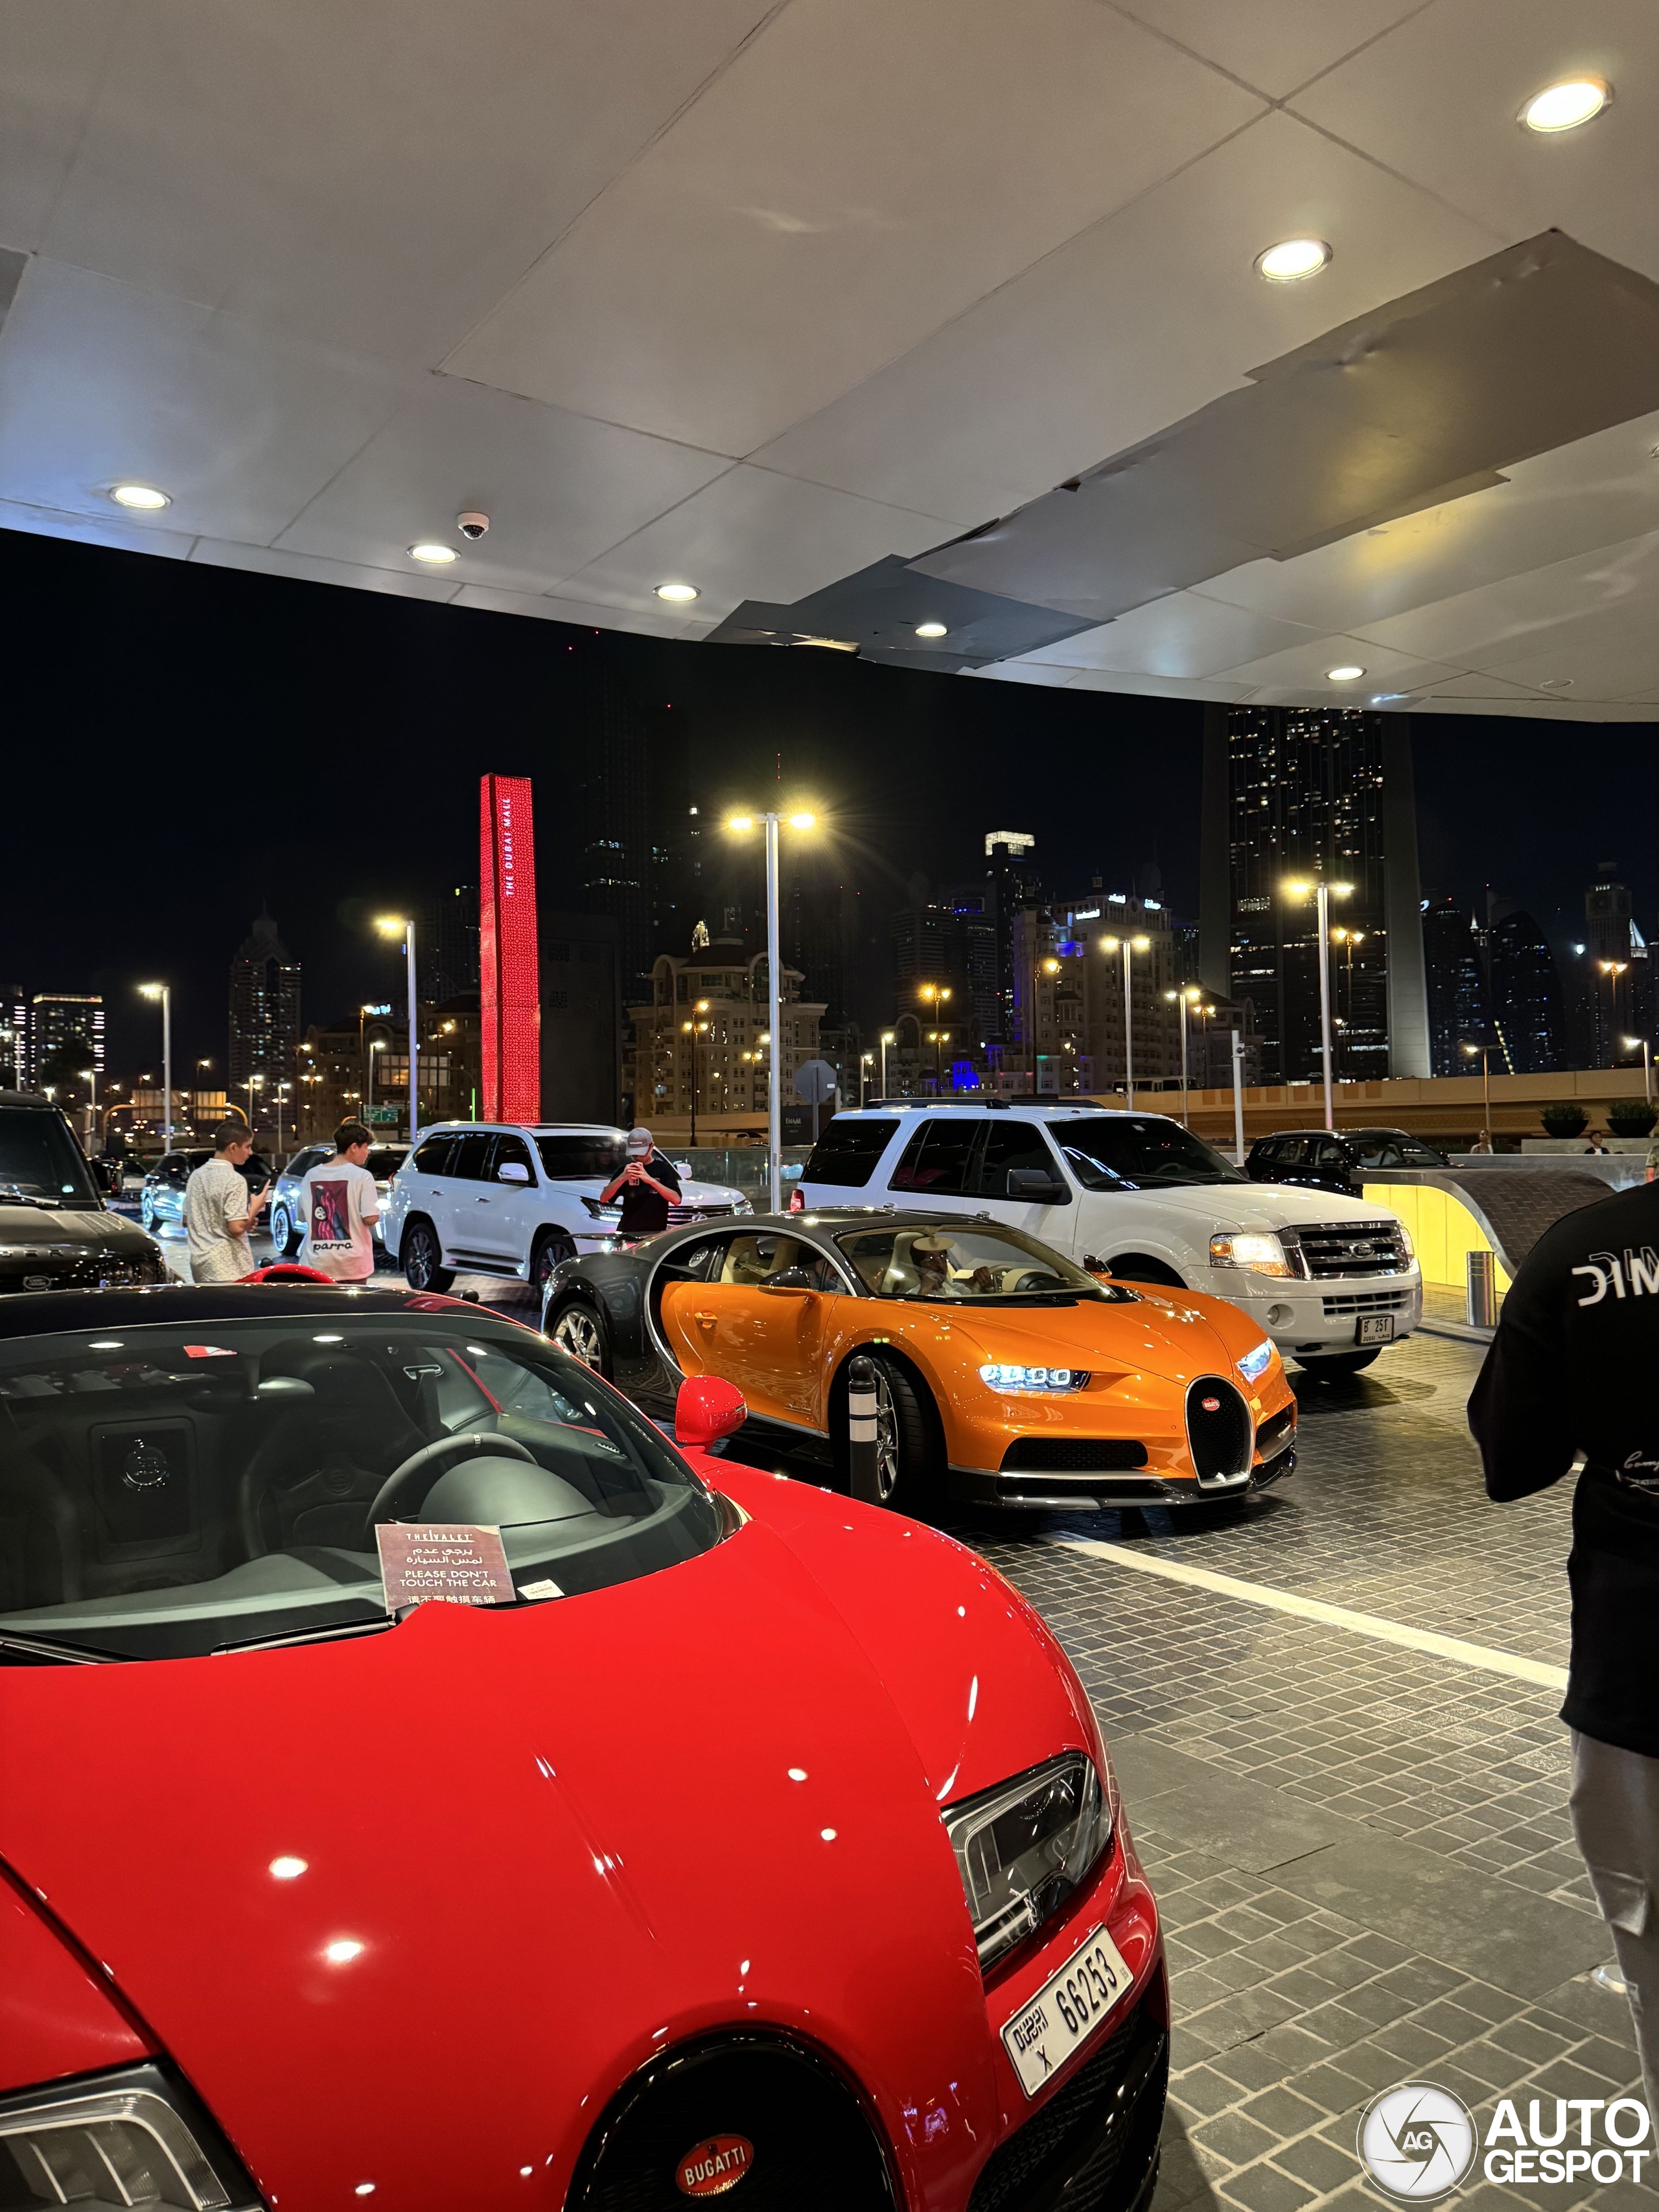 Another Bugatti in Dubai